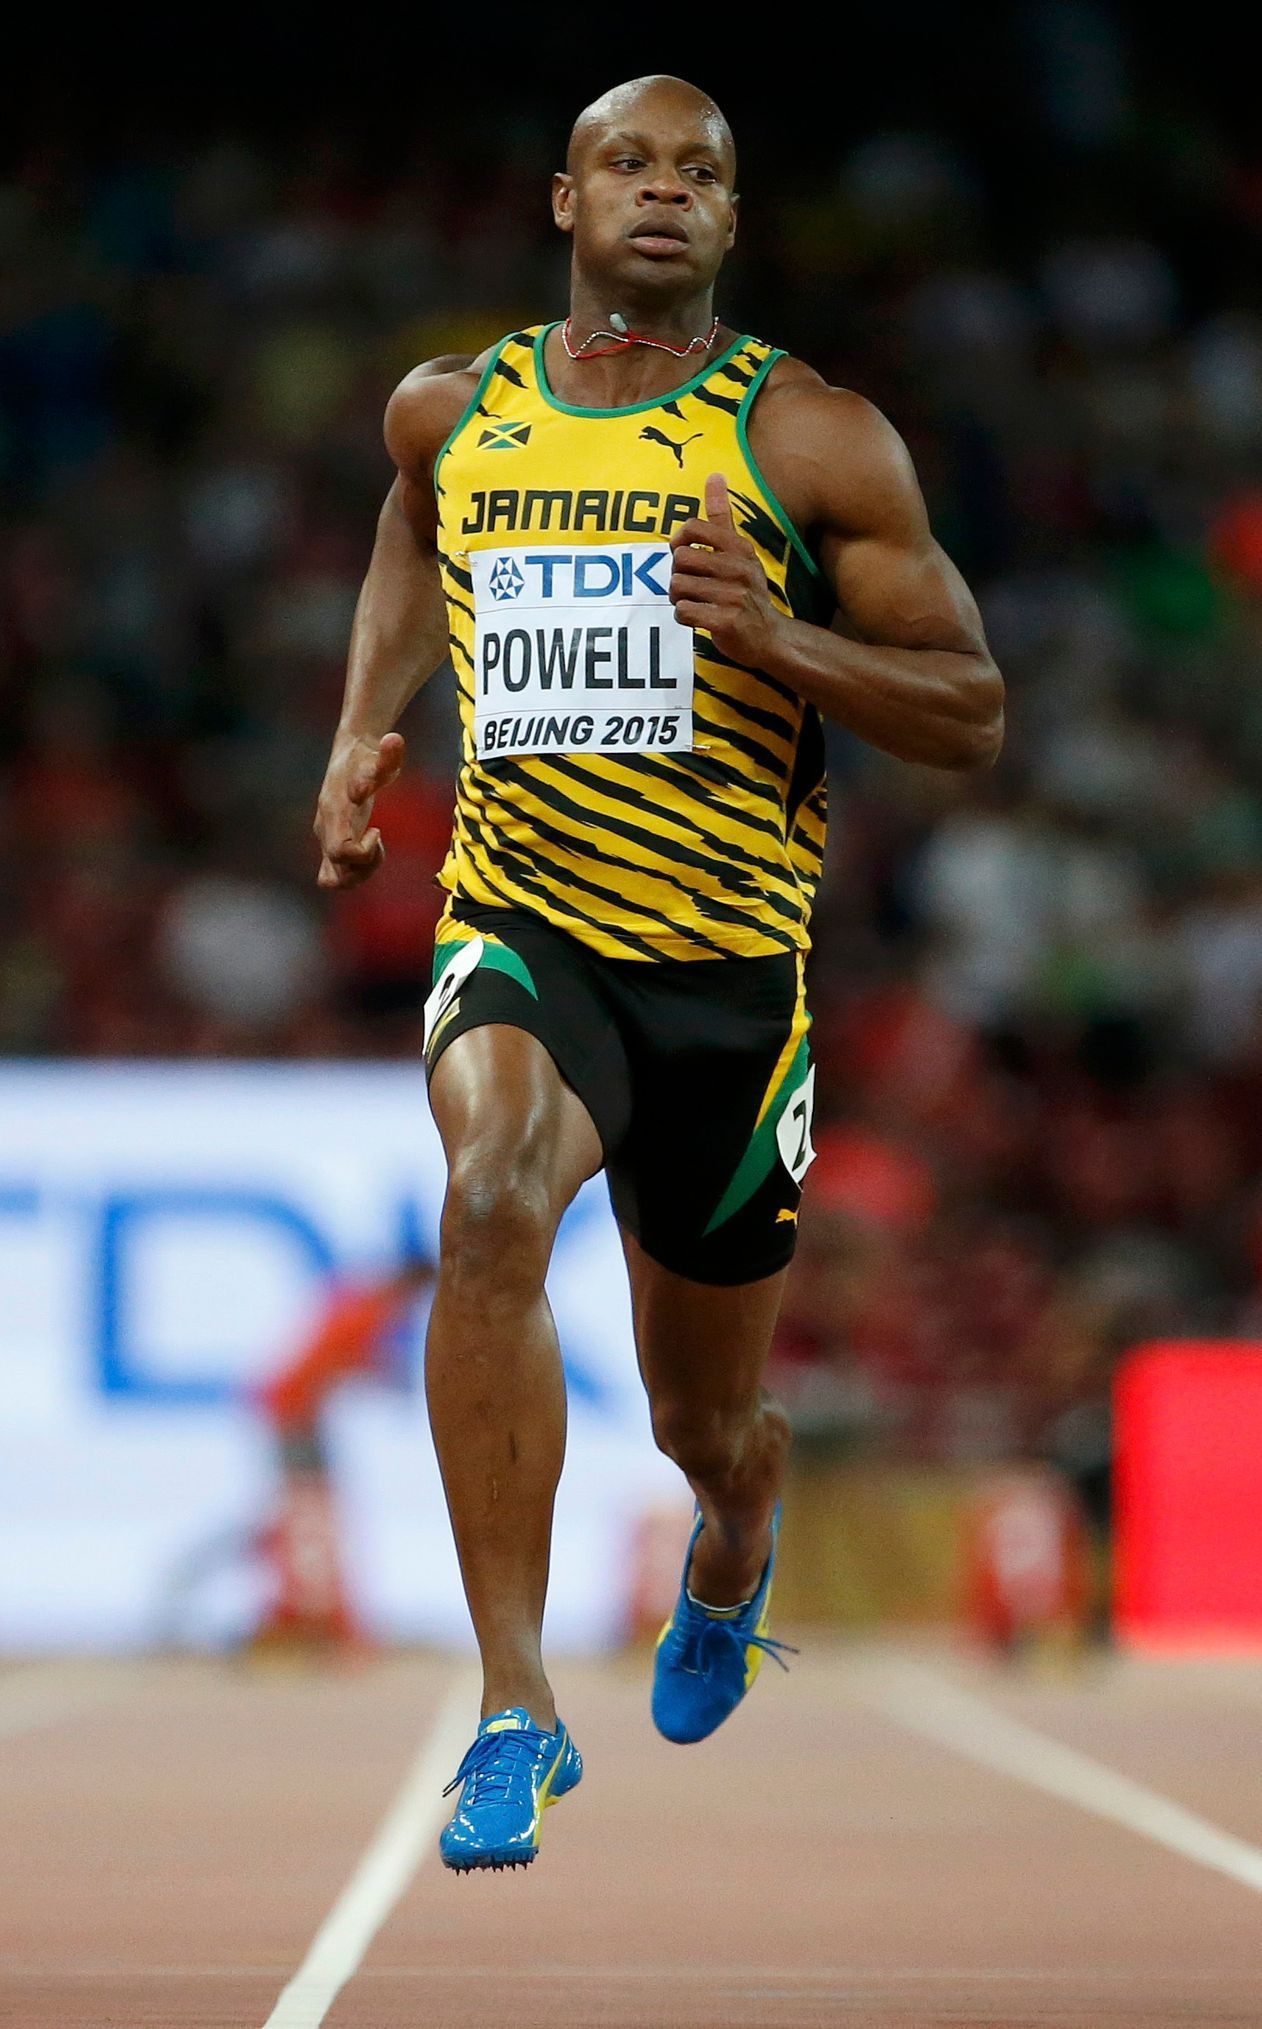 MS v atletice 2015, 100 m: Asafa Powell